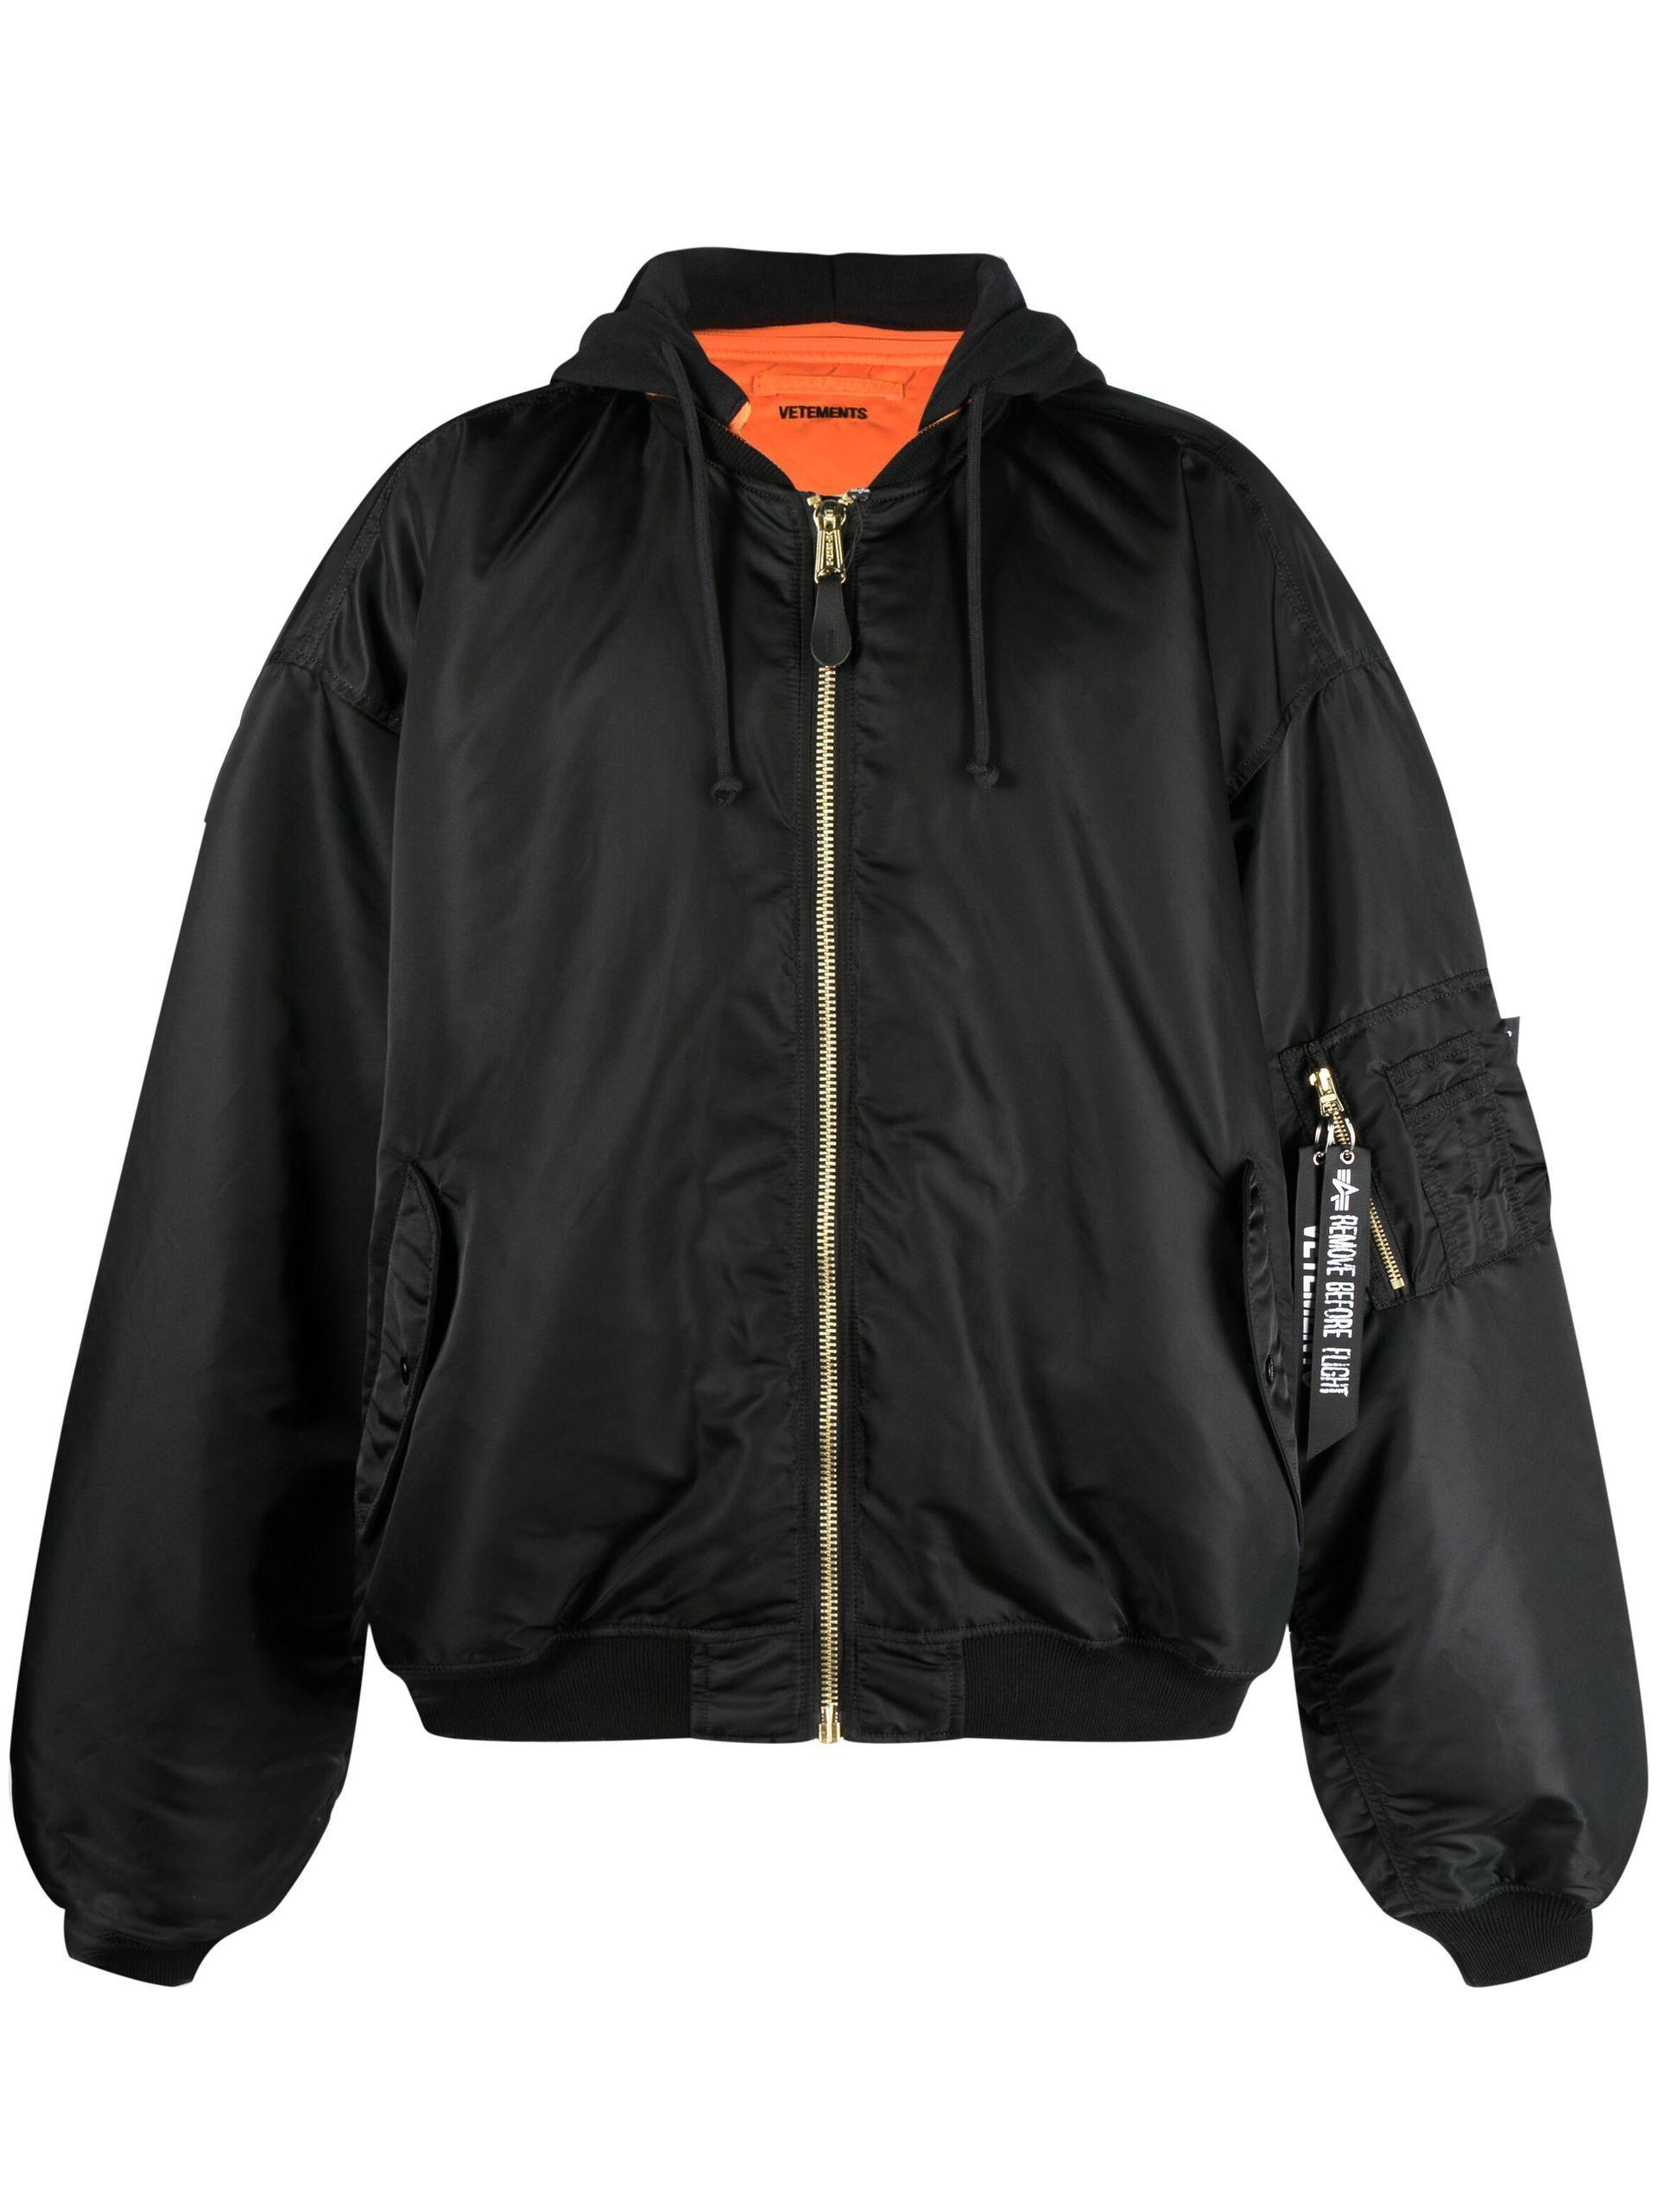 Vetements Reversible Bomber Jacket Black/orange for Men | Lyst